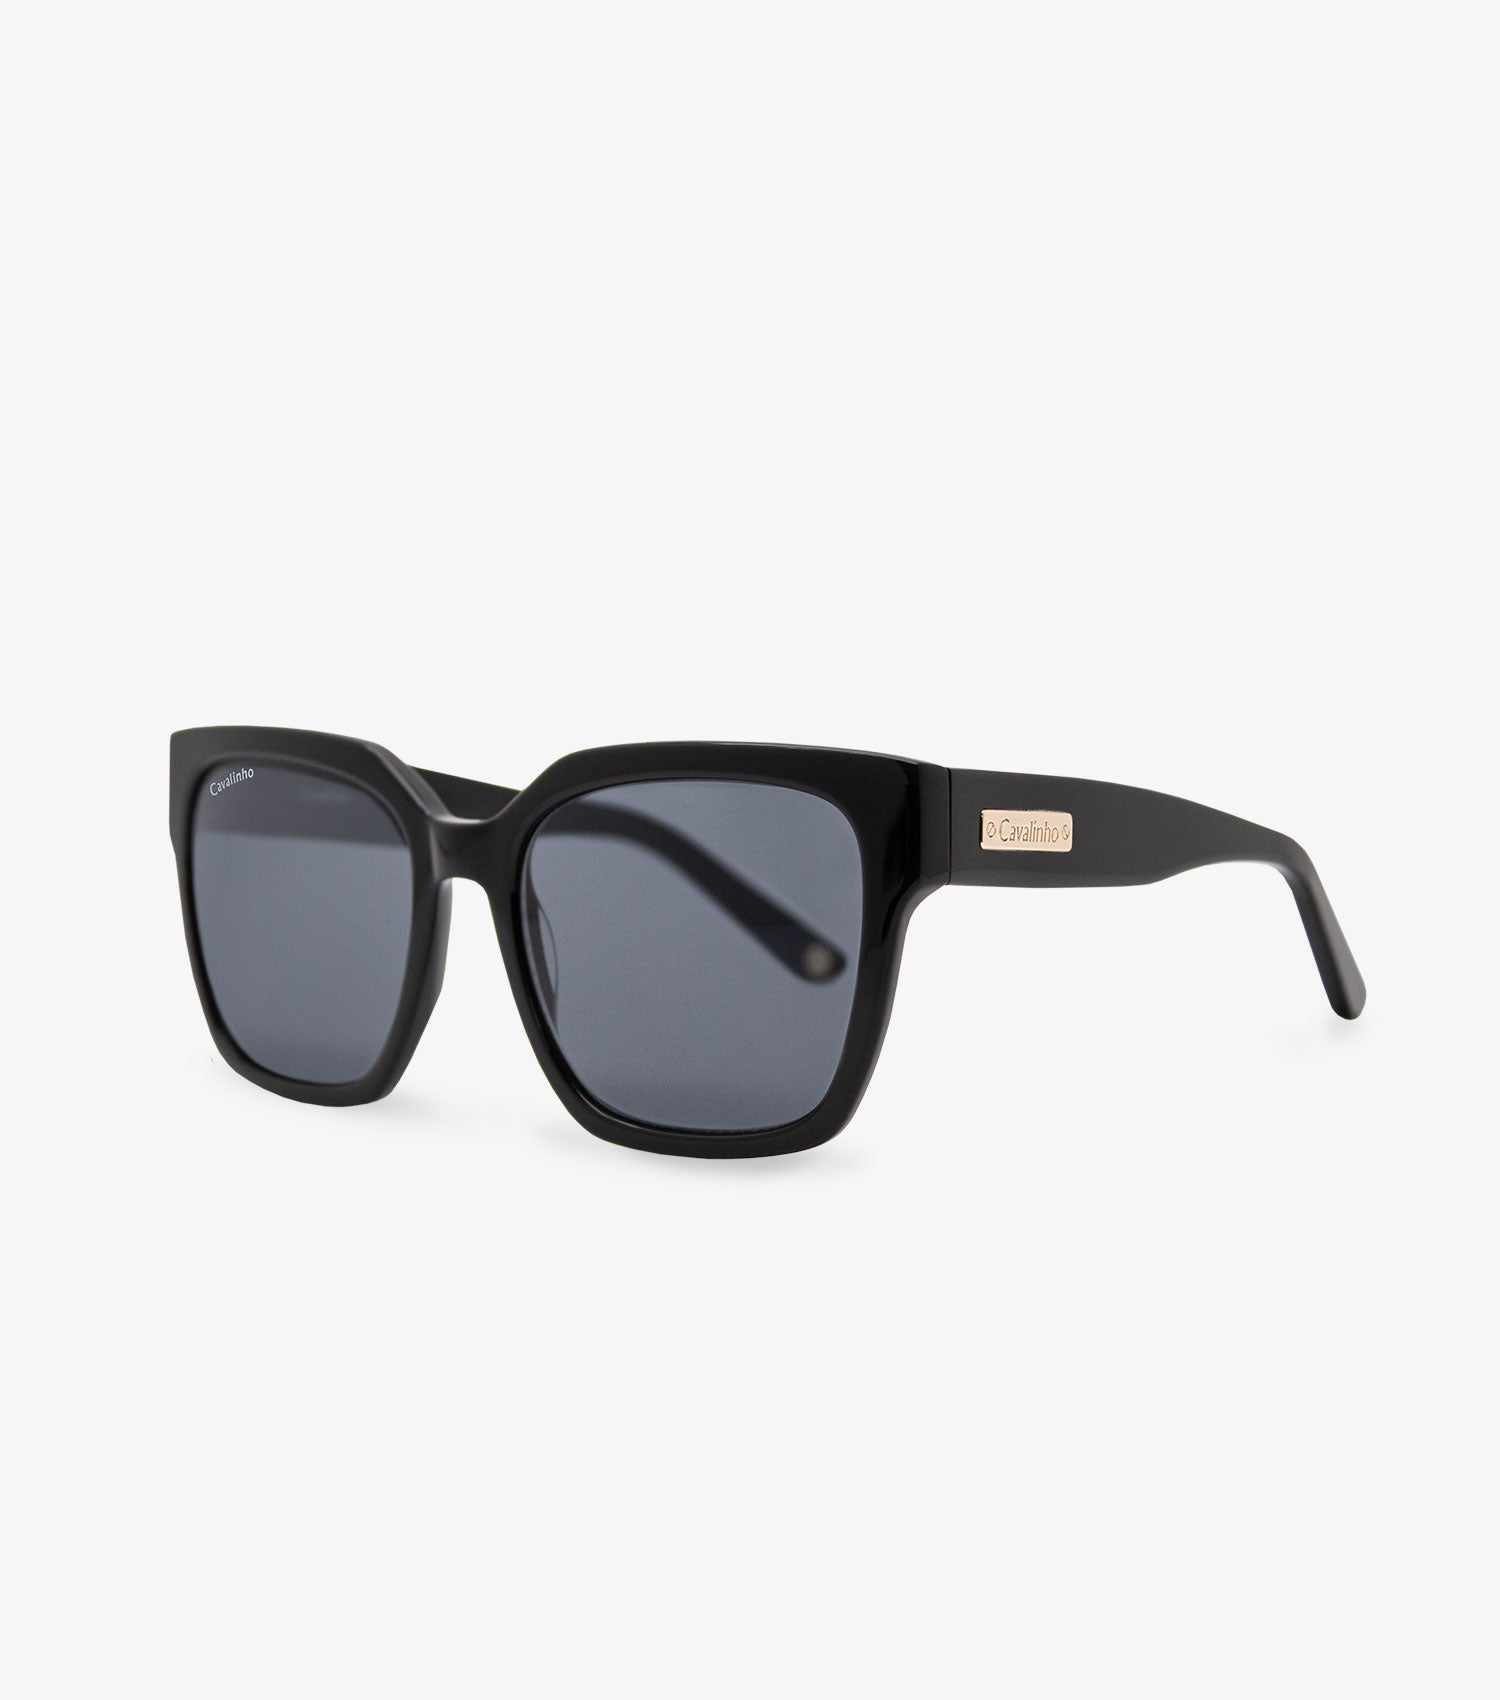 Cavalinho Sunglasses Timeless for Women SKU 38501323.01 #color_black